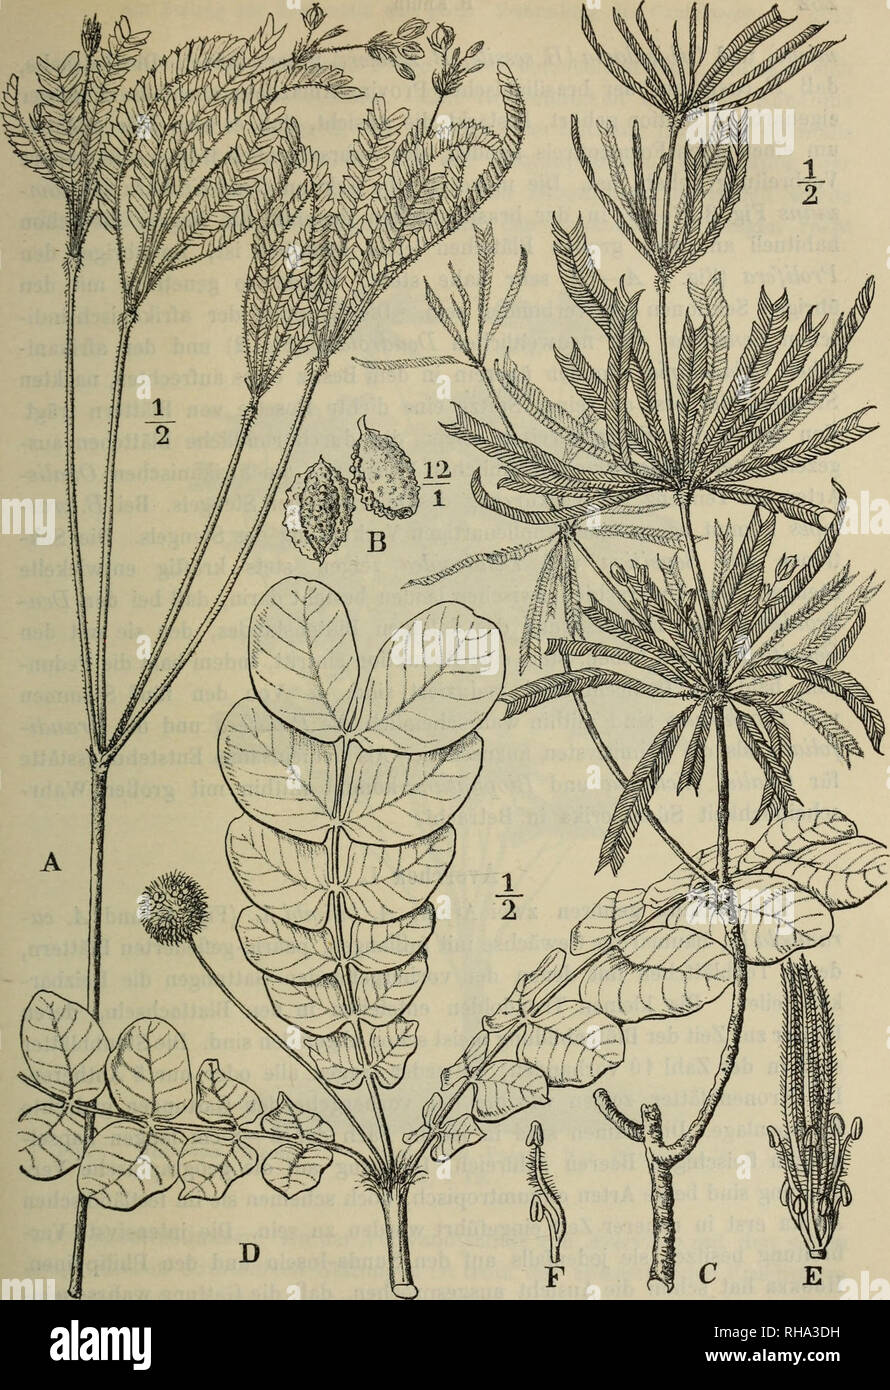 . Jahrbu Botanische ?cher fu ?r und Systematik, Pflanzengeschichte Pflanzengeographie. Plantengeografie Paleobotanie ; botanique ; ; ; Taxonomie Pflanzen. Fig. 3. A-B Biophytum 7iudum (Arn.) Wight. Un Habitus, Teilfrucht b. G - Bio- phytum aesehynomenifolium[0. Hoffm.) R. Knuth. - D-F Biophytum (somnimis Mart, et Zucc.) R. Knuth. D Oberes T(3E ilstück Staubgefäße der Pflanze, und Stempel, F 2 endurance.. Veuillez noter que ces images sont extraites de la page numérisée des images qui peuvent avoir été retouchées numériquement pour plus de lisibilité - coloration et l'aspect de ces illustrations ne peut pas parfaitement ressembler au Banque D'Images